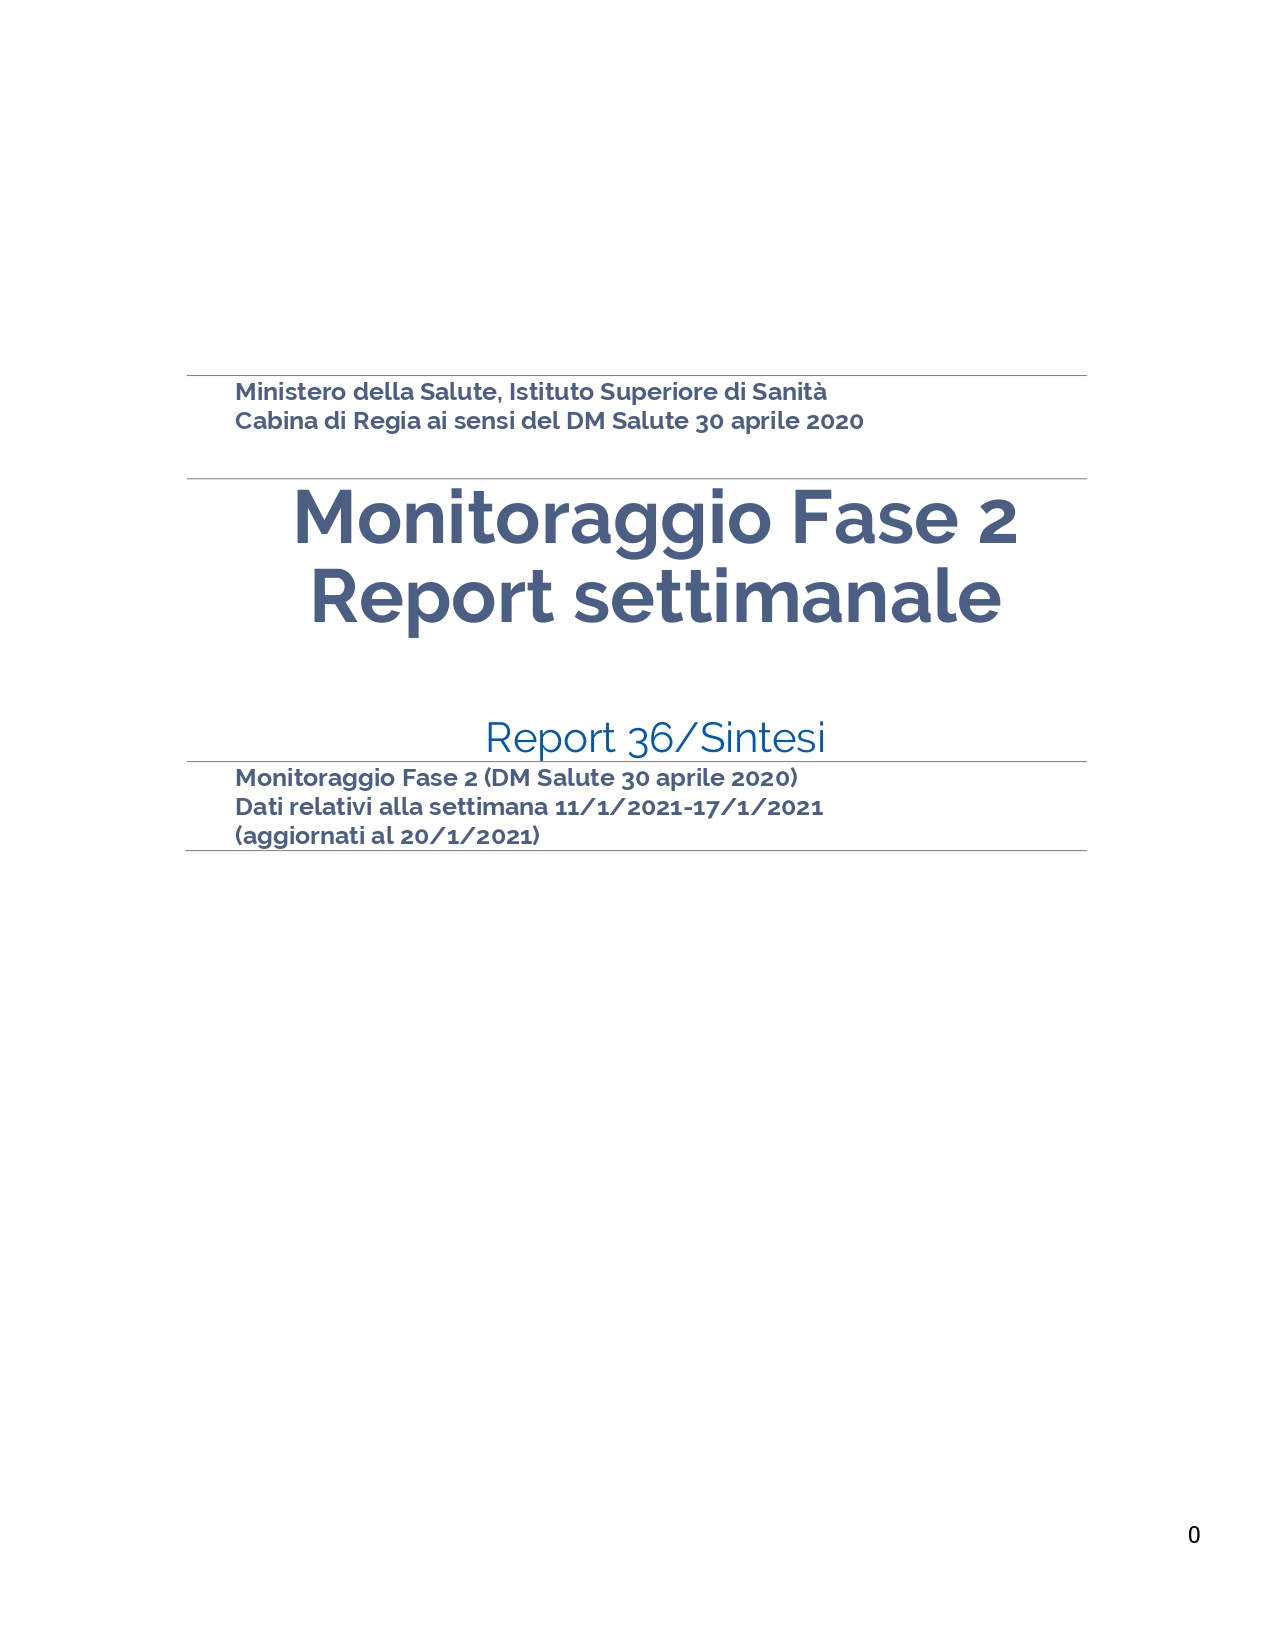 REPORT SETTIMANALE MINISTERO SALUTE SUL VENETO_page-0001